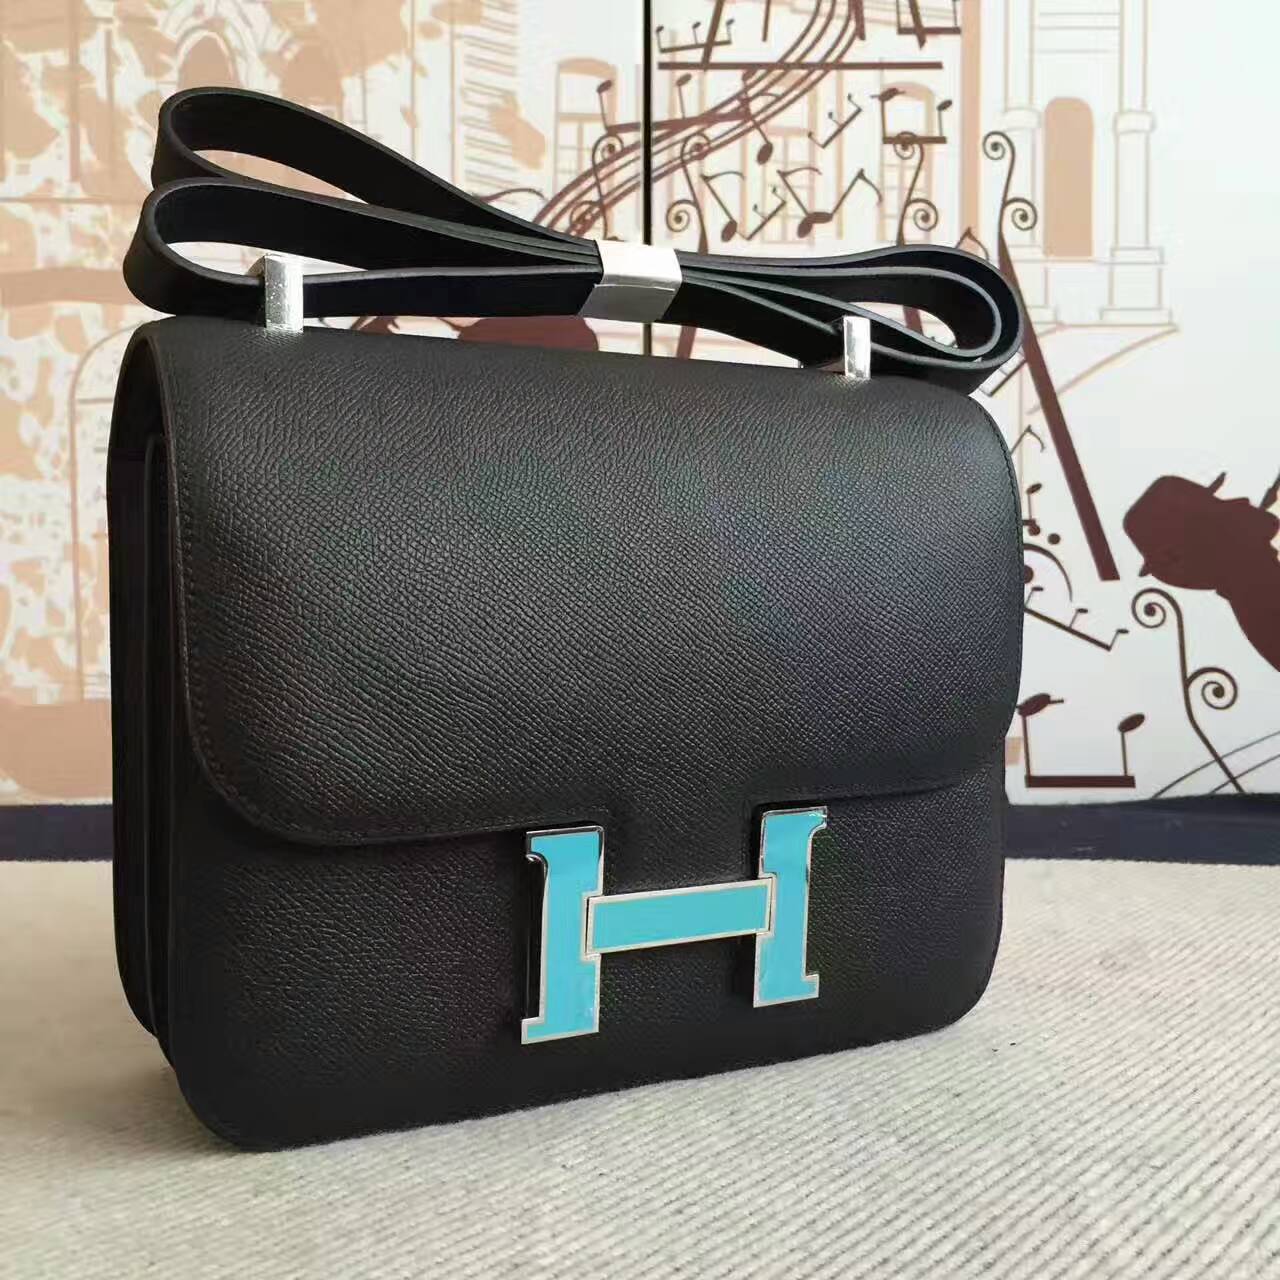 On Sale Hermes CK89 Black Epsom Calfskin Leather Constance Bag 19cm